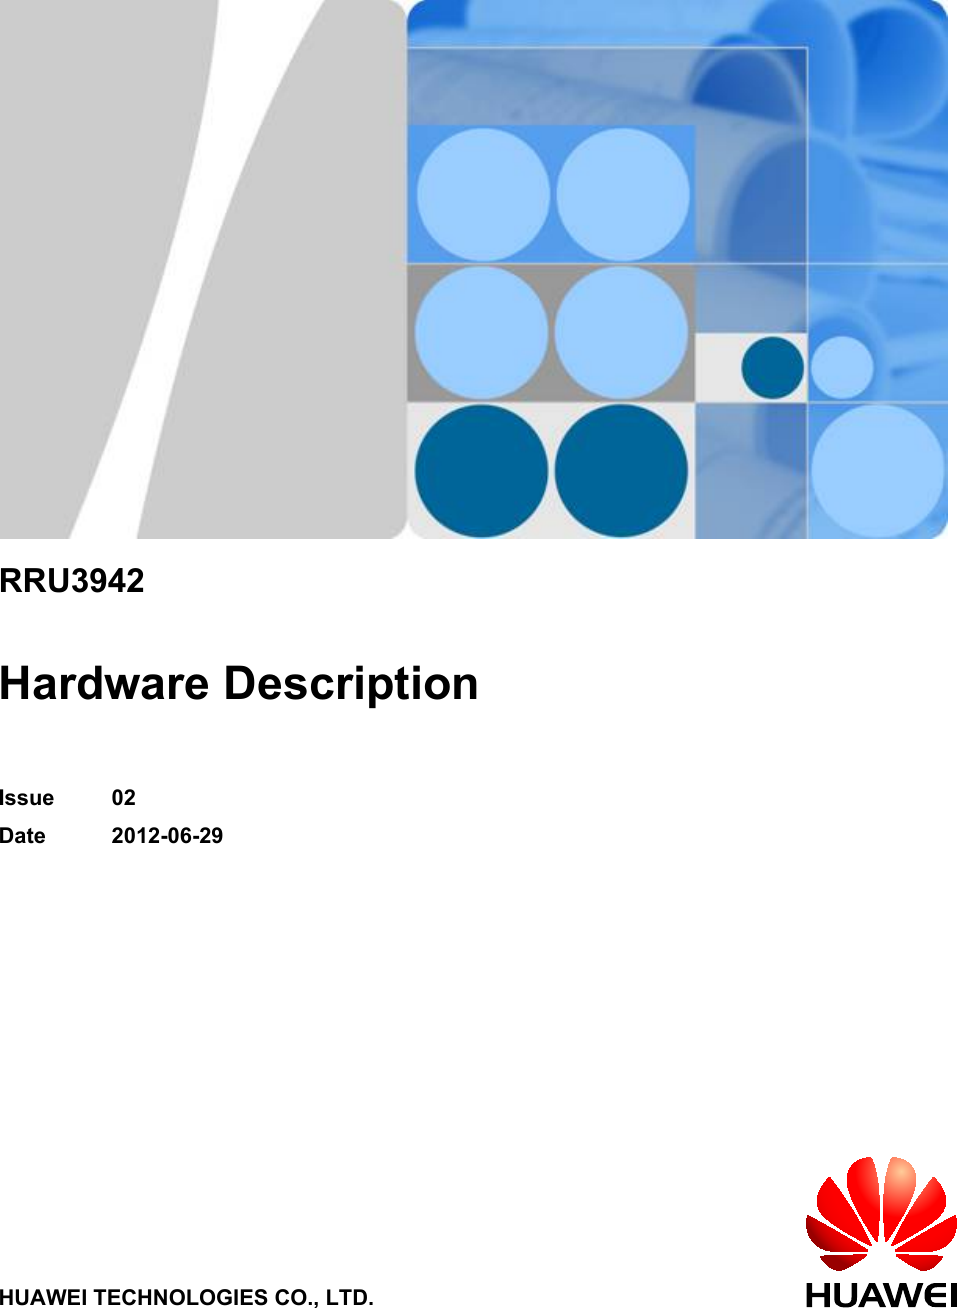 RRU3942Hardware DescriptionIssue 02Date 2012-06-29HUAWEI TECHNOLOGIES CO., LTD.